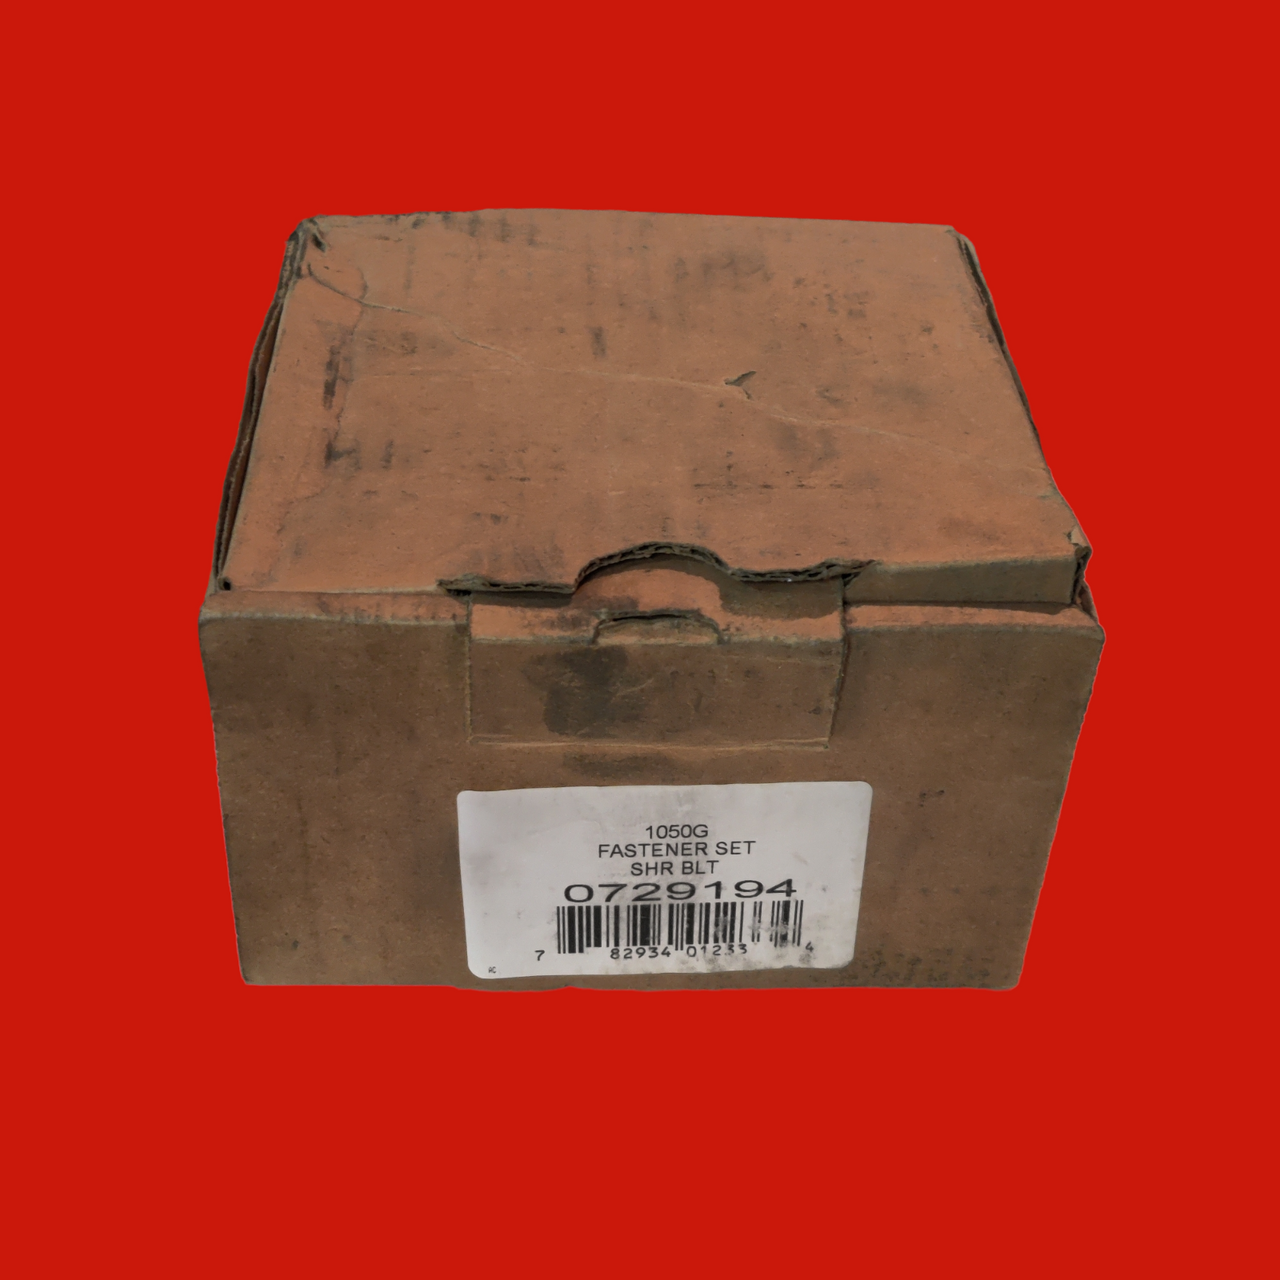 Faulk 1050G Fastener Set SHR Blt 07729194, Box of 12